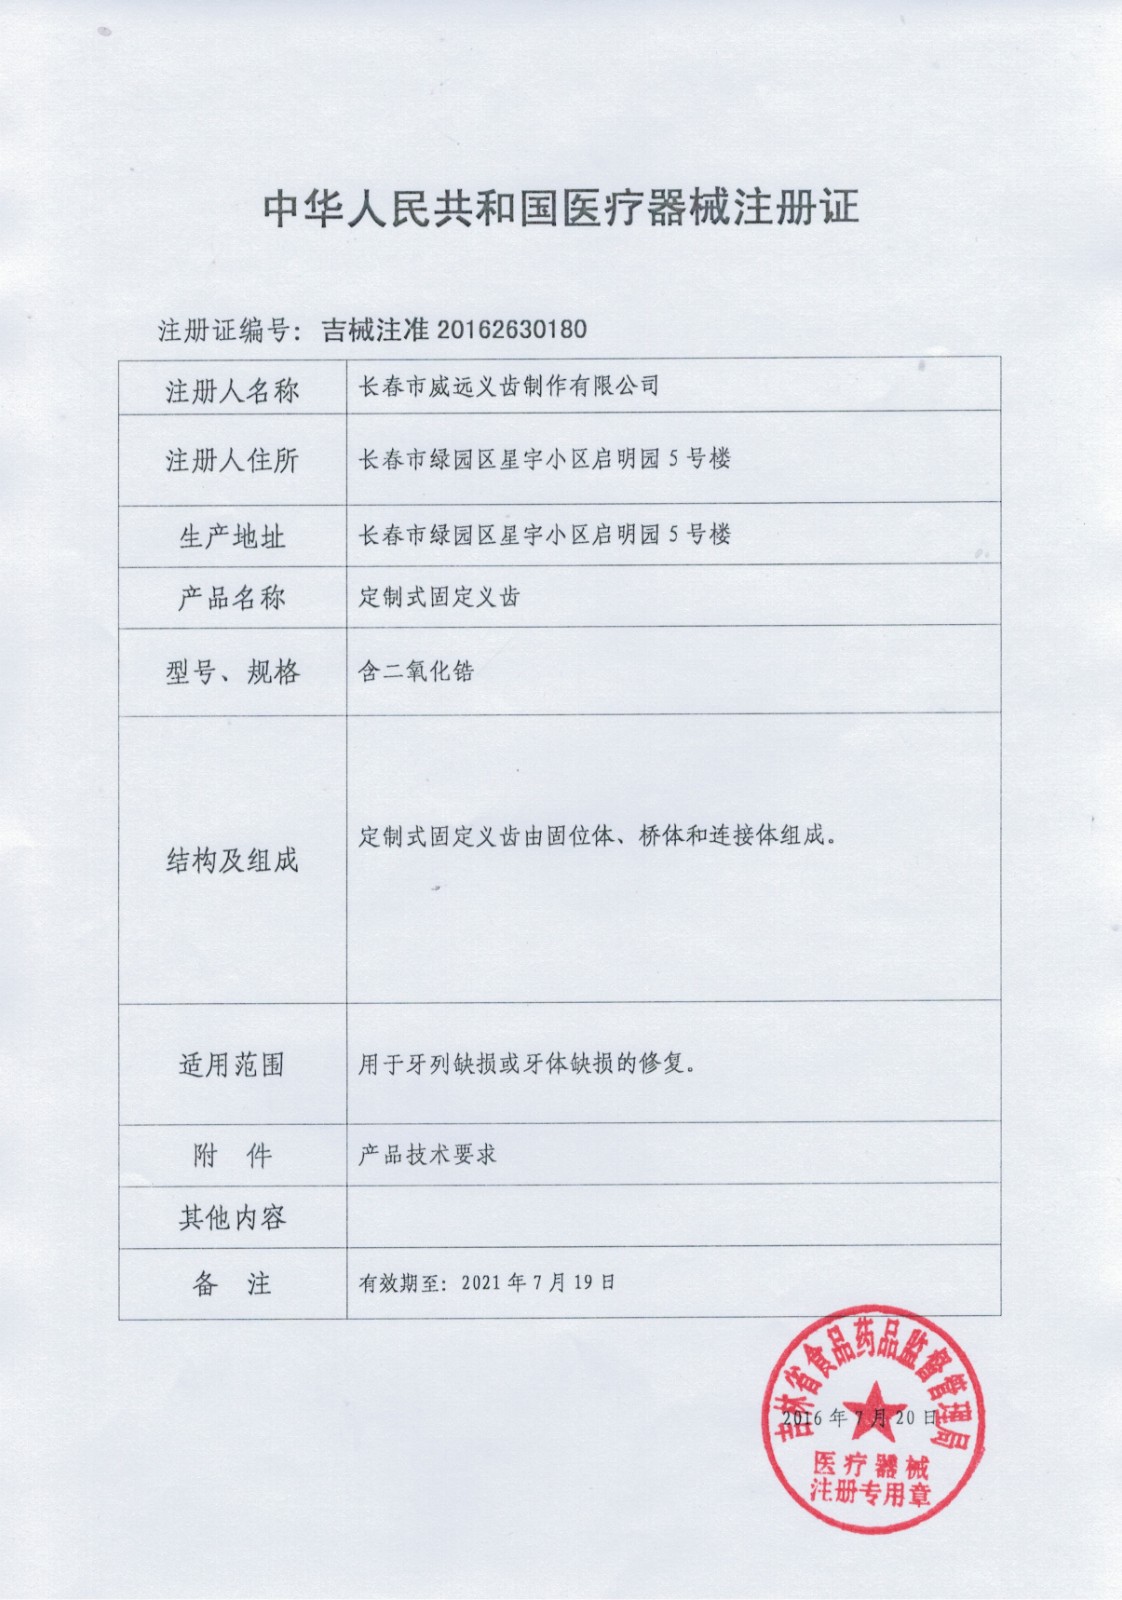 中华人民共和国医疗器械注册证-1缩小尺寸.jpg